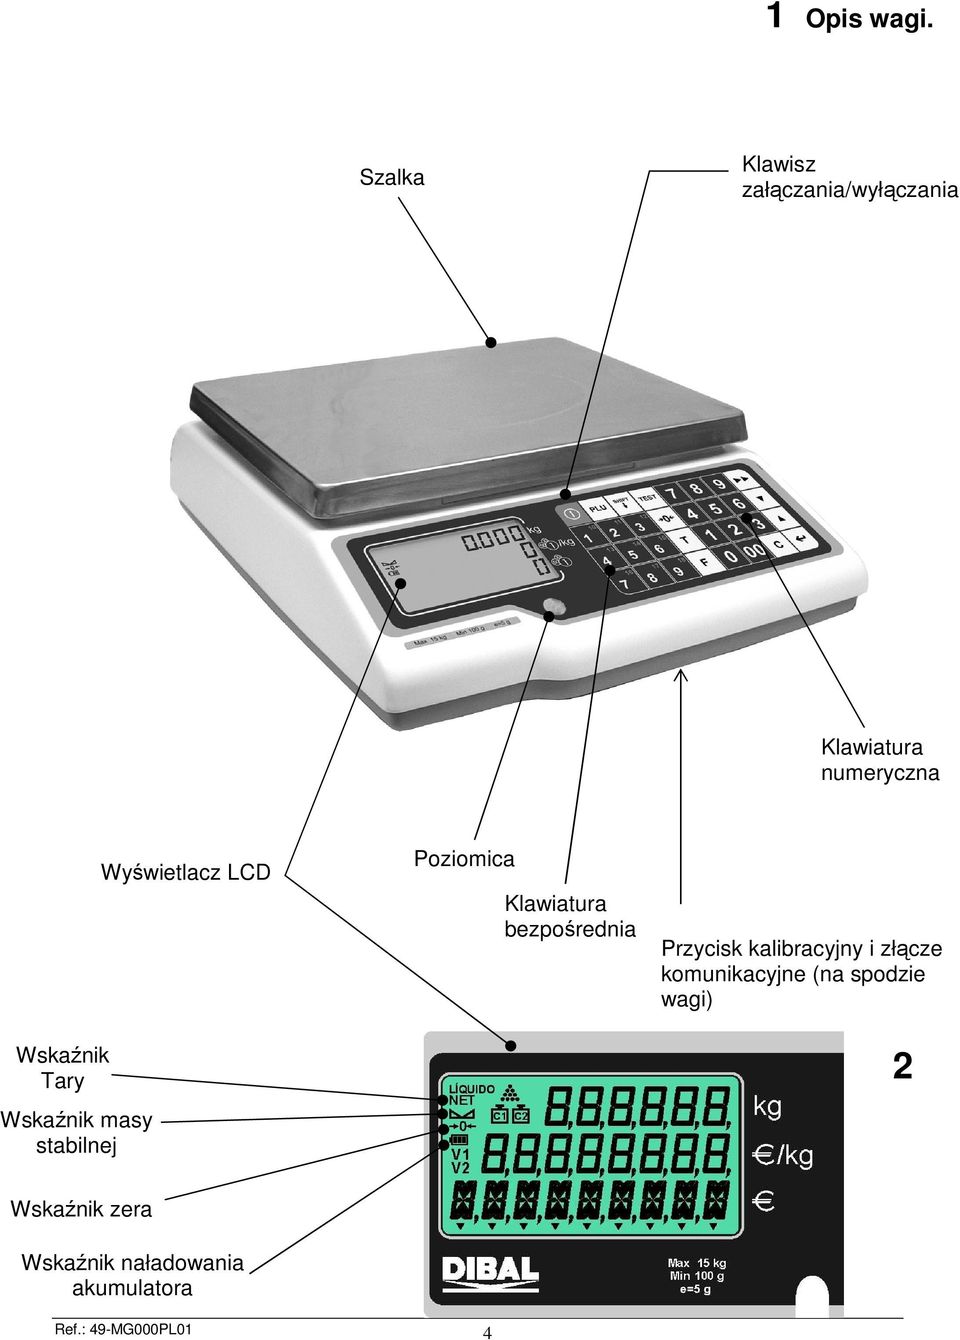 Wskaźnik masy stabilnej Wyświetlacz LCD Poziomica Klawiatura